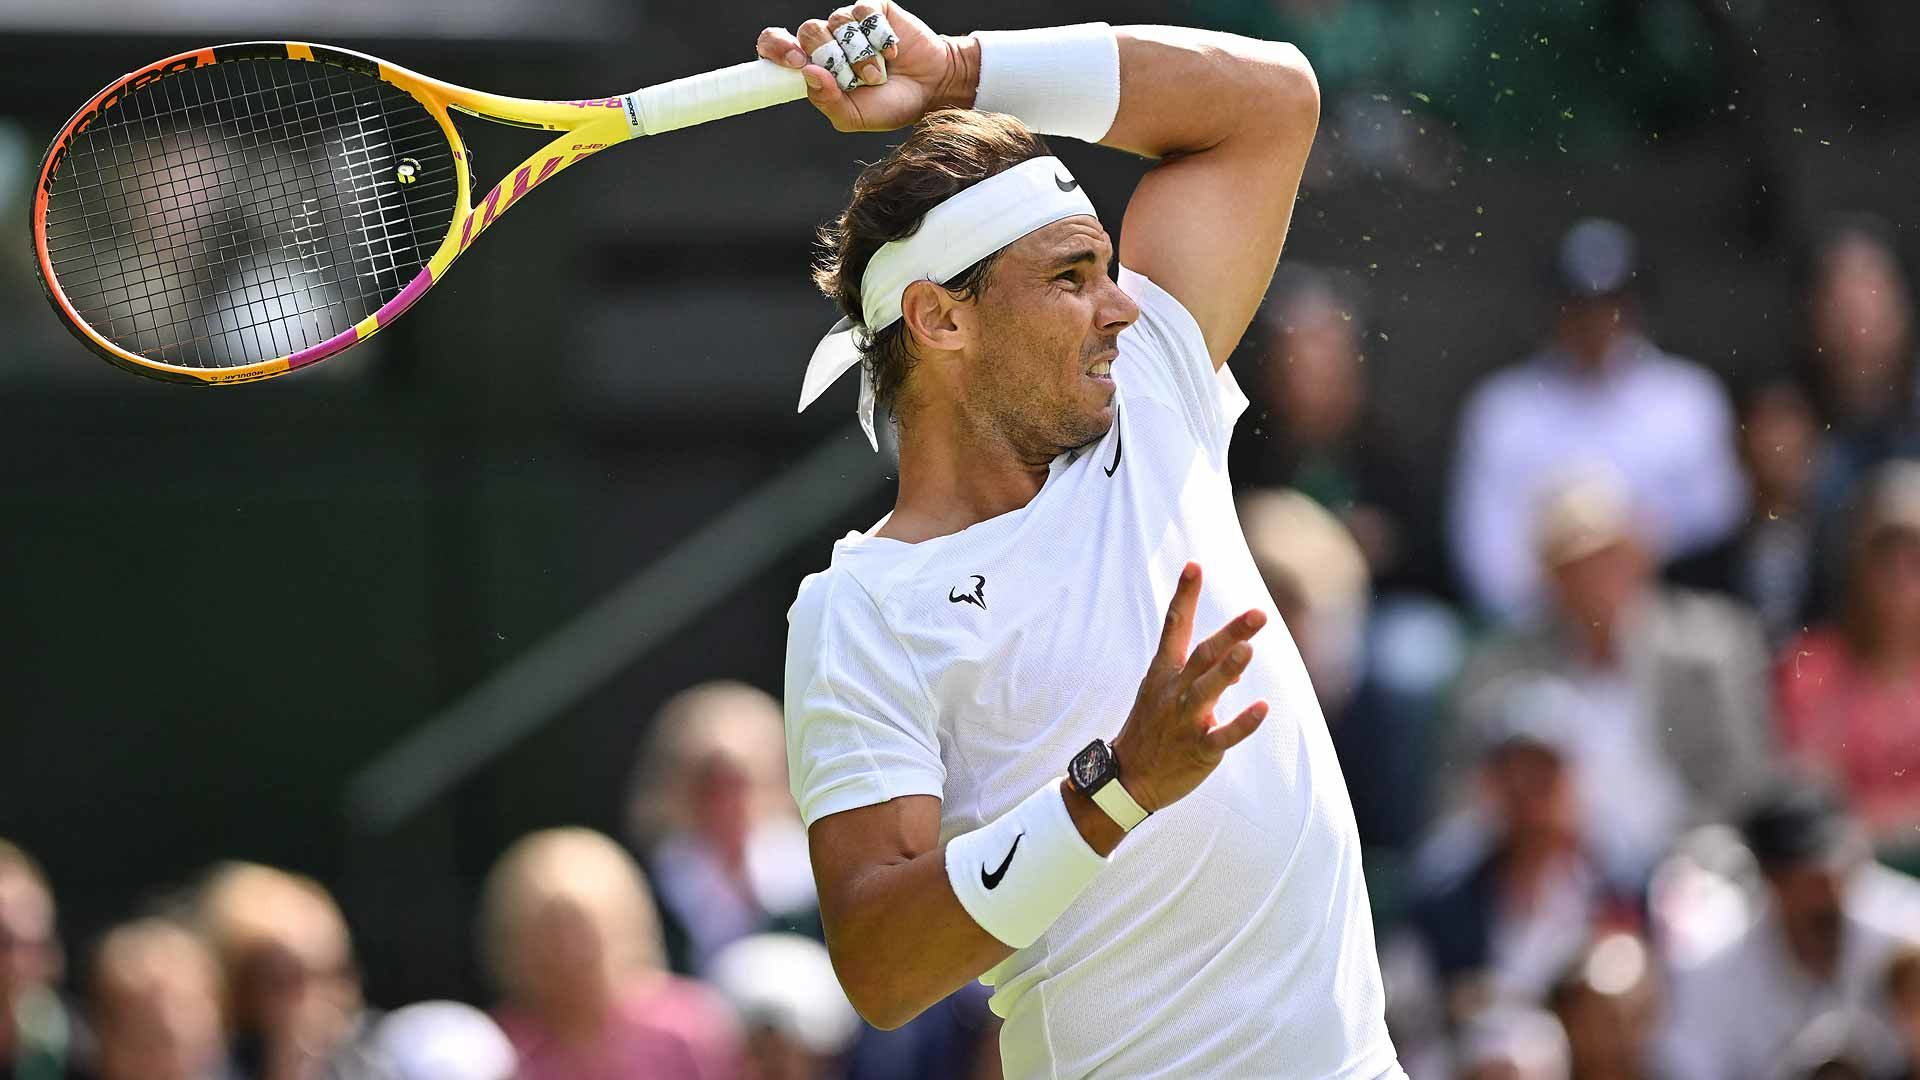 Resultado del partido entre Rafael Nadal y Ricardas Berankis en Wimbledon 2022: gana Nadal con un gran cuarto set